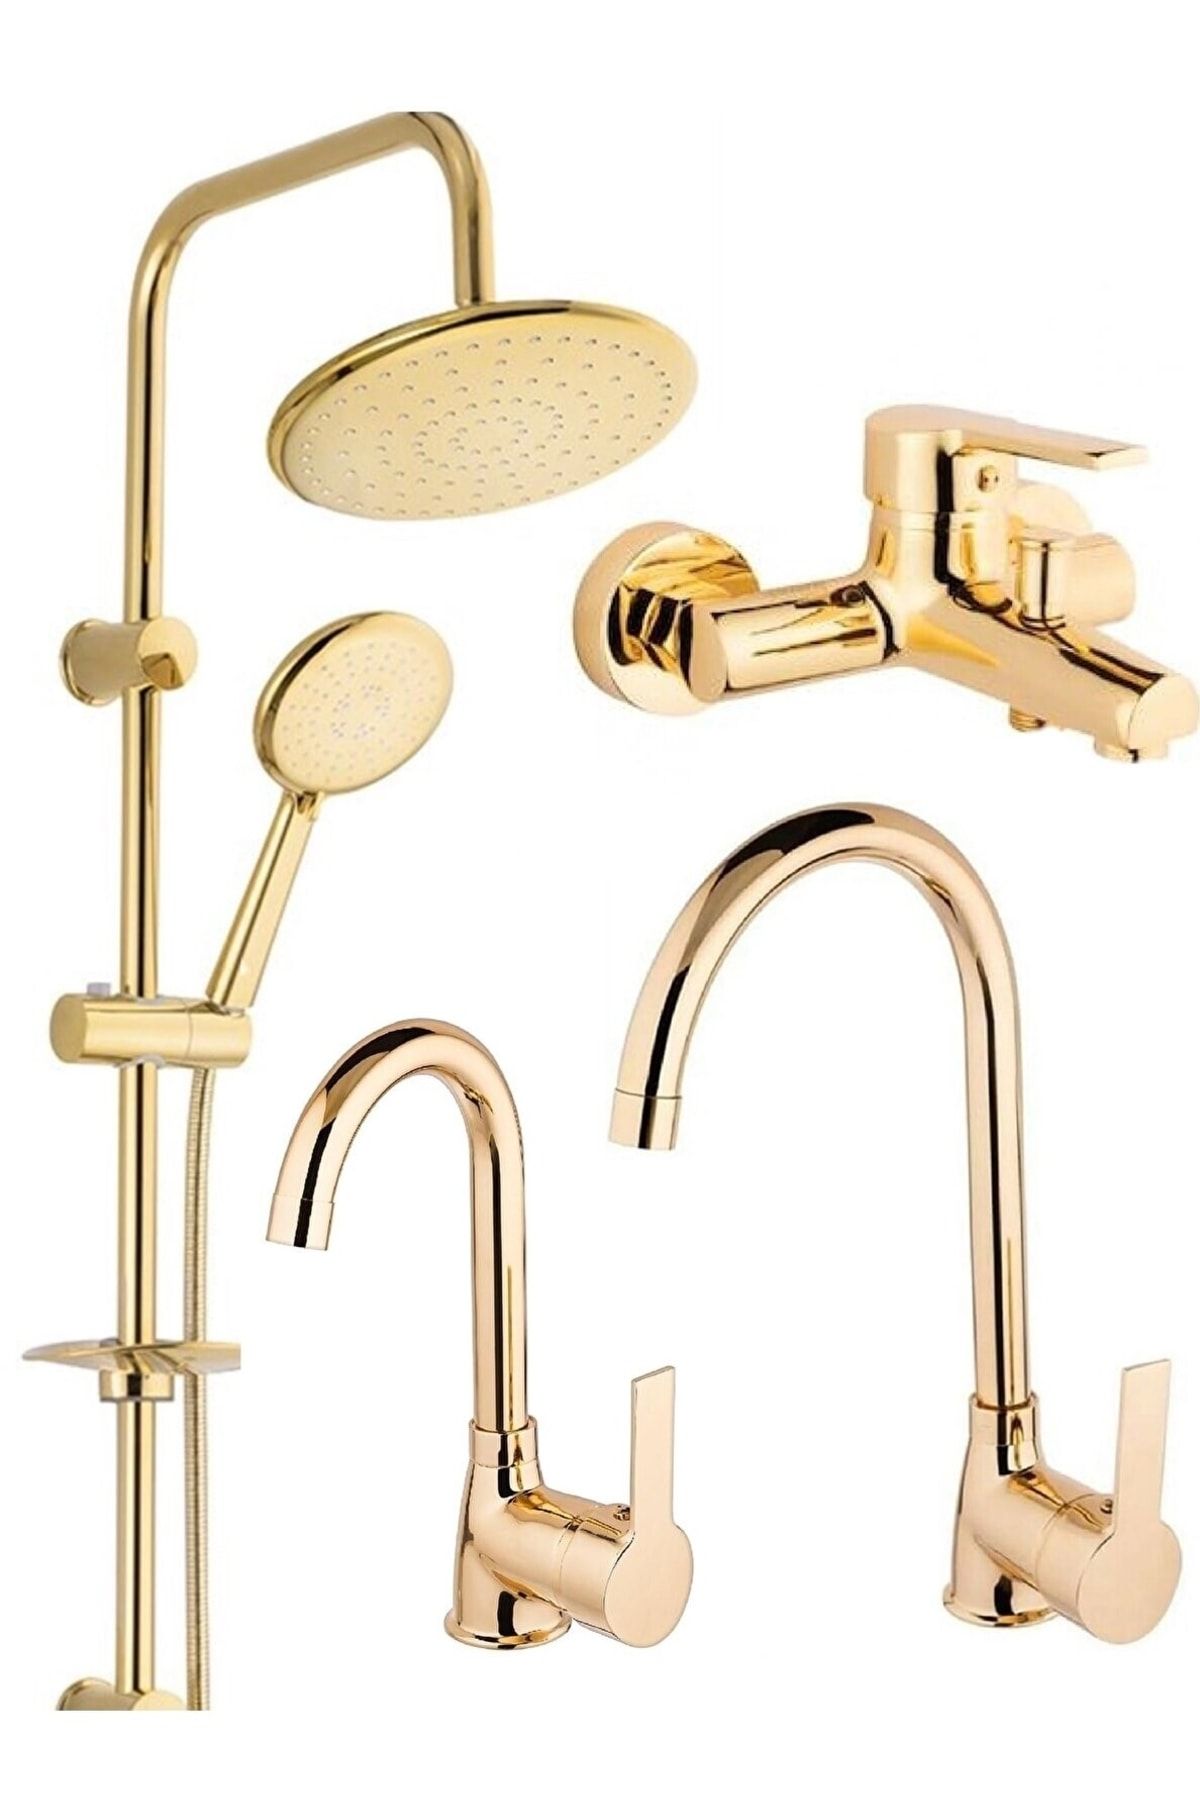 BDL ARMATÜR Gold Altın Robot Duş Seti, Banyo, Mutfak Eviye, Lavabo Bataryası Musluğu Çeşmesi 4'lü Set